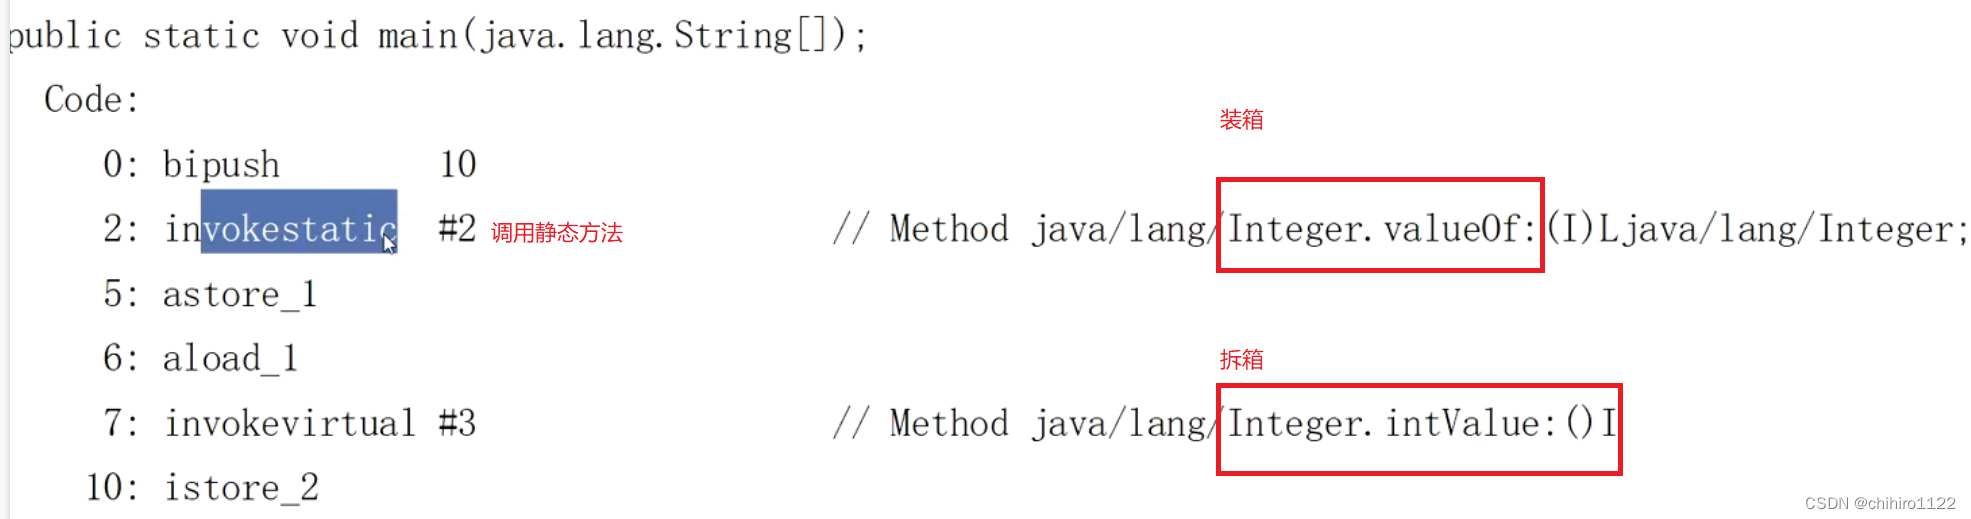 java集合框架及其背后的数据类型 - 包装类